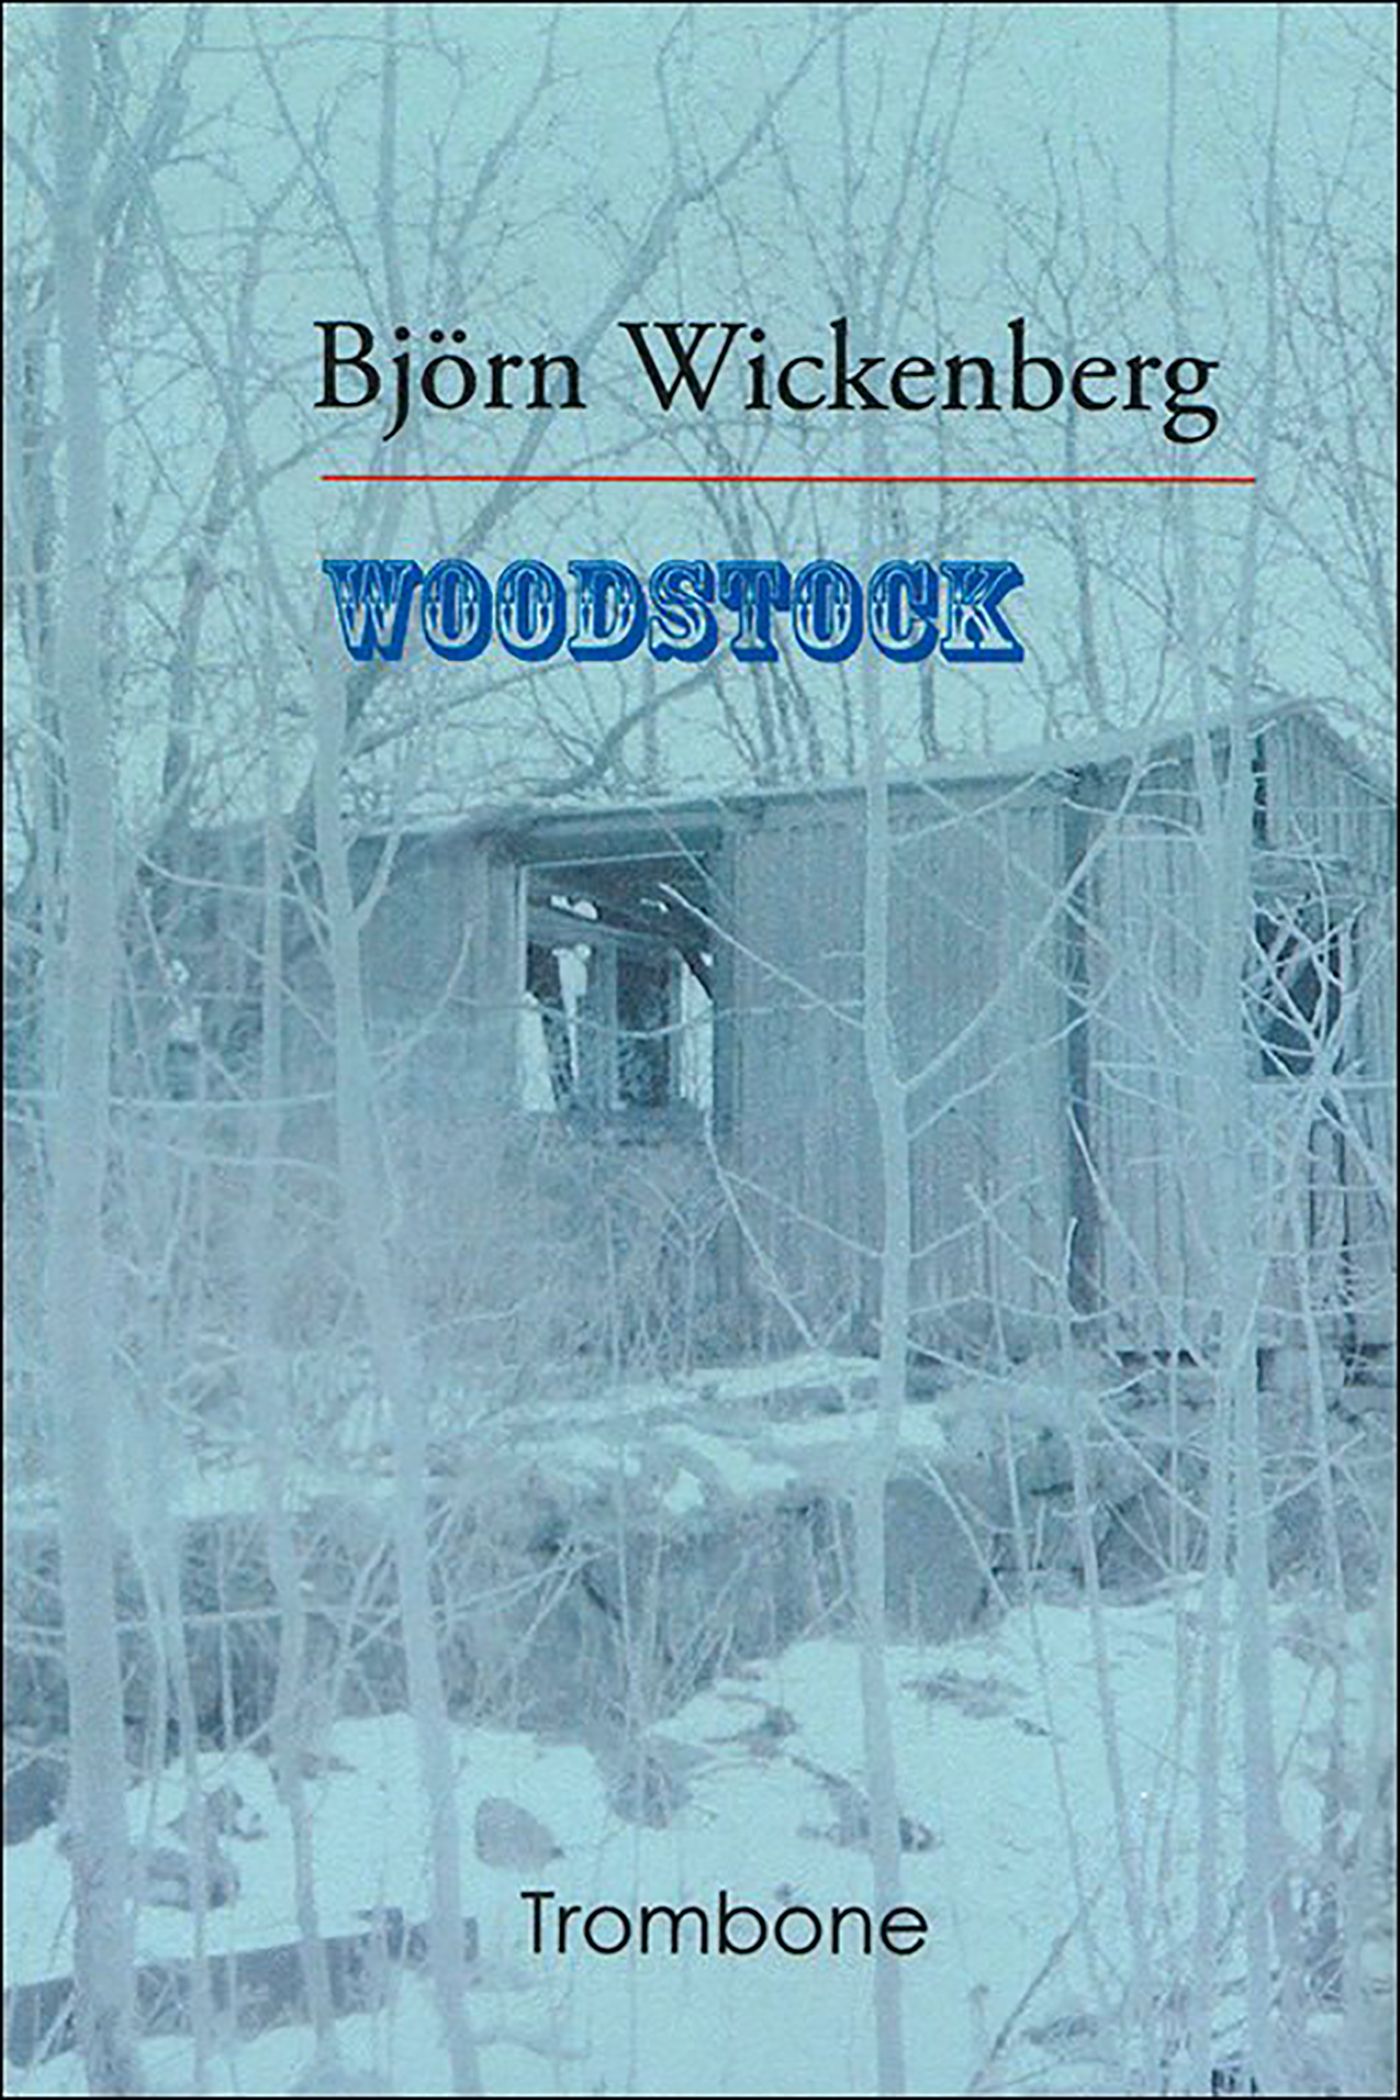 Woodstock, eBook by Björn Wickenberg